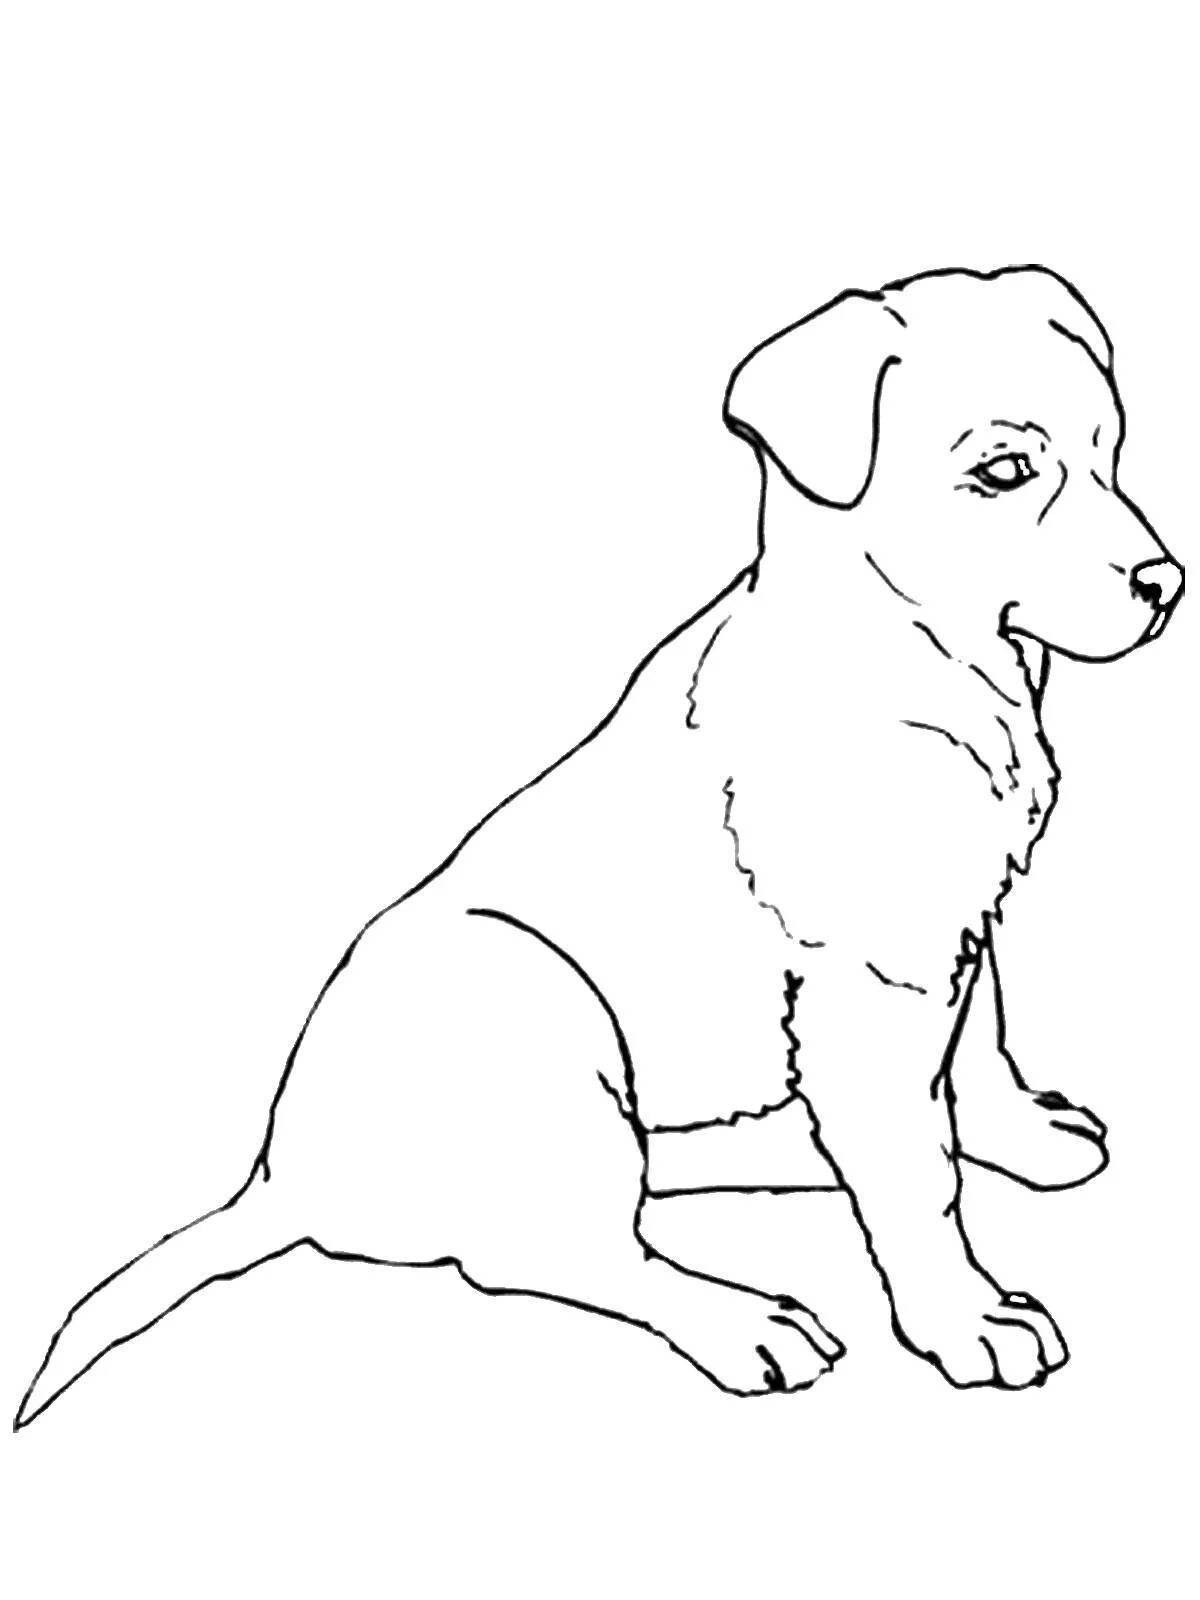 Раскраска пузырчатых черно-белых собак